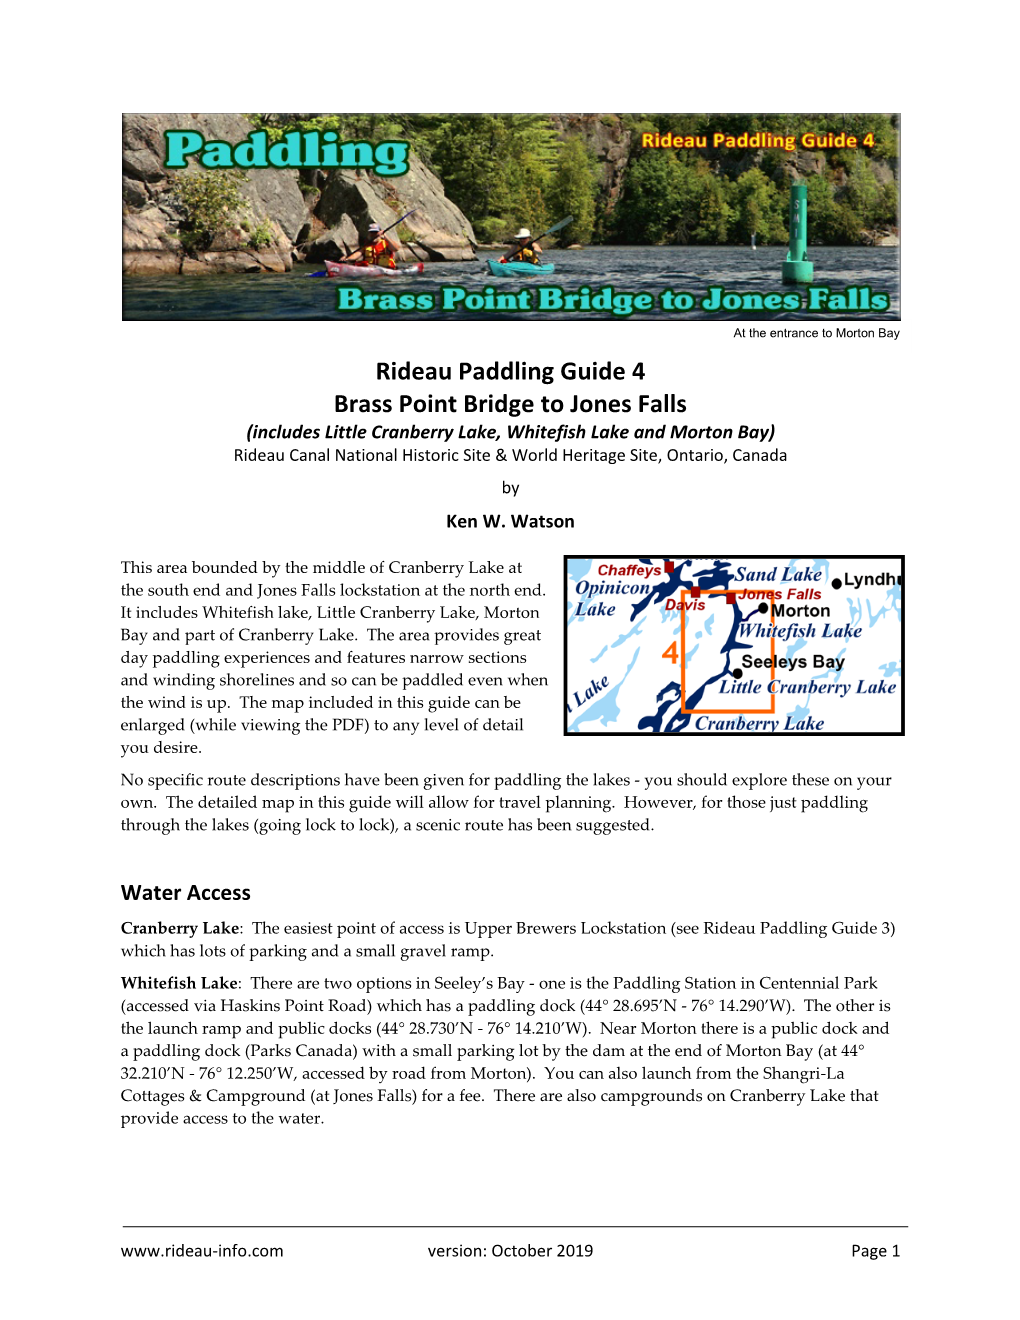 Rideau Paddling Guide 4: Brass Point Bridge to Jones Falls by Ken W